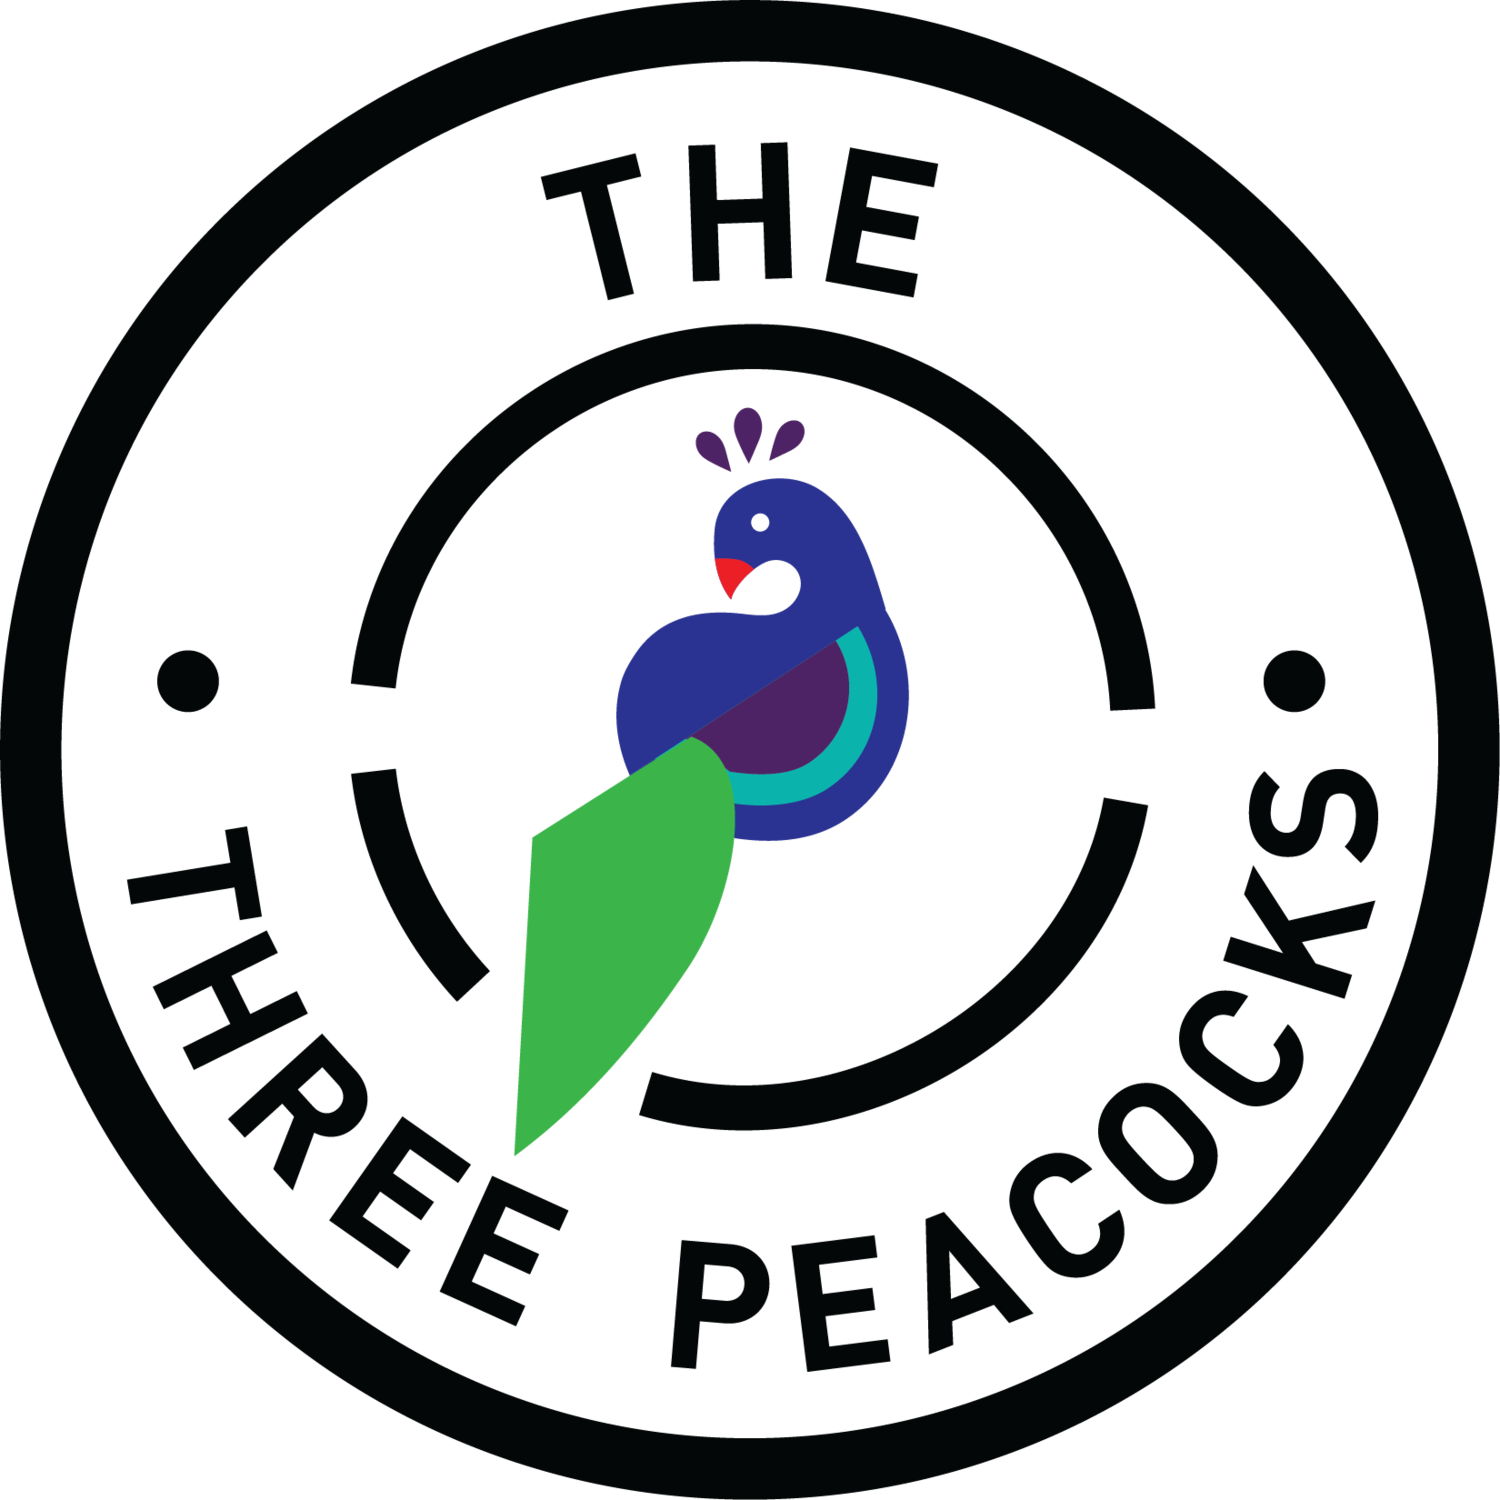 the three peacocks logo